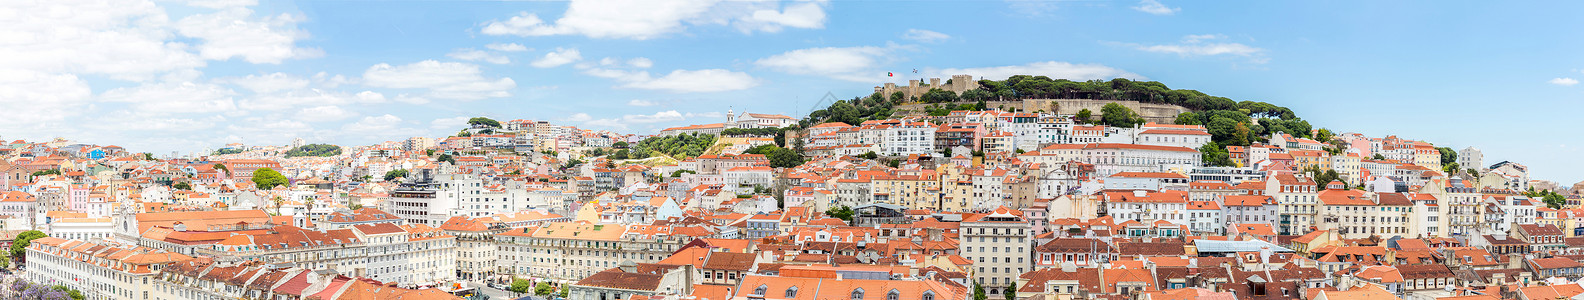 葡萄牙里斯本首都城市城市景观全景高清图片